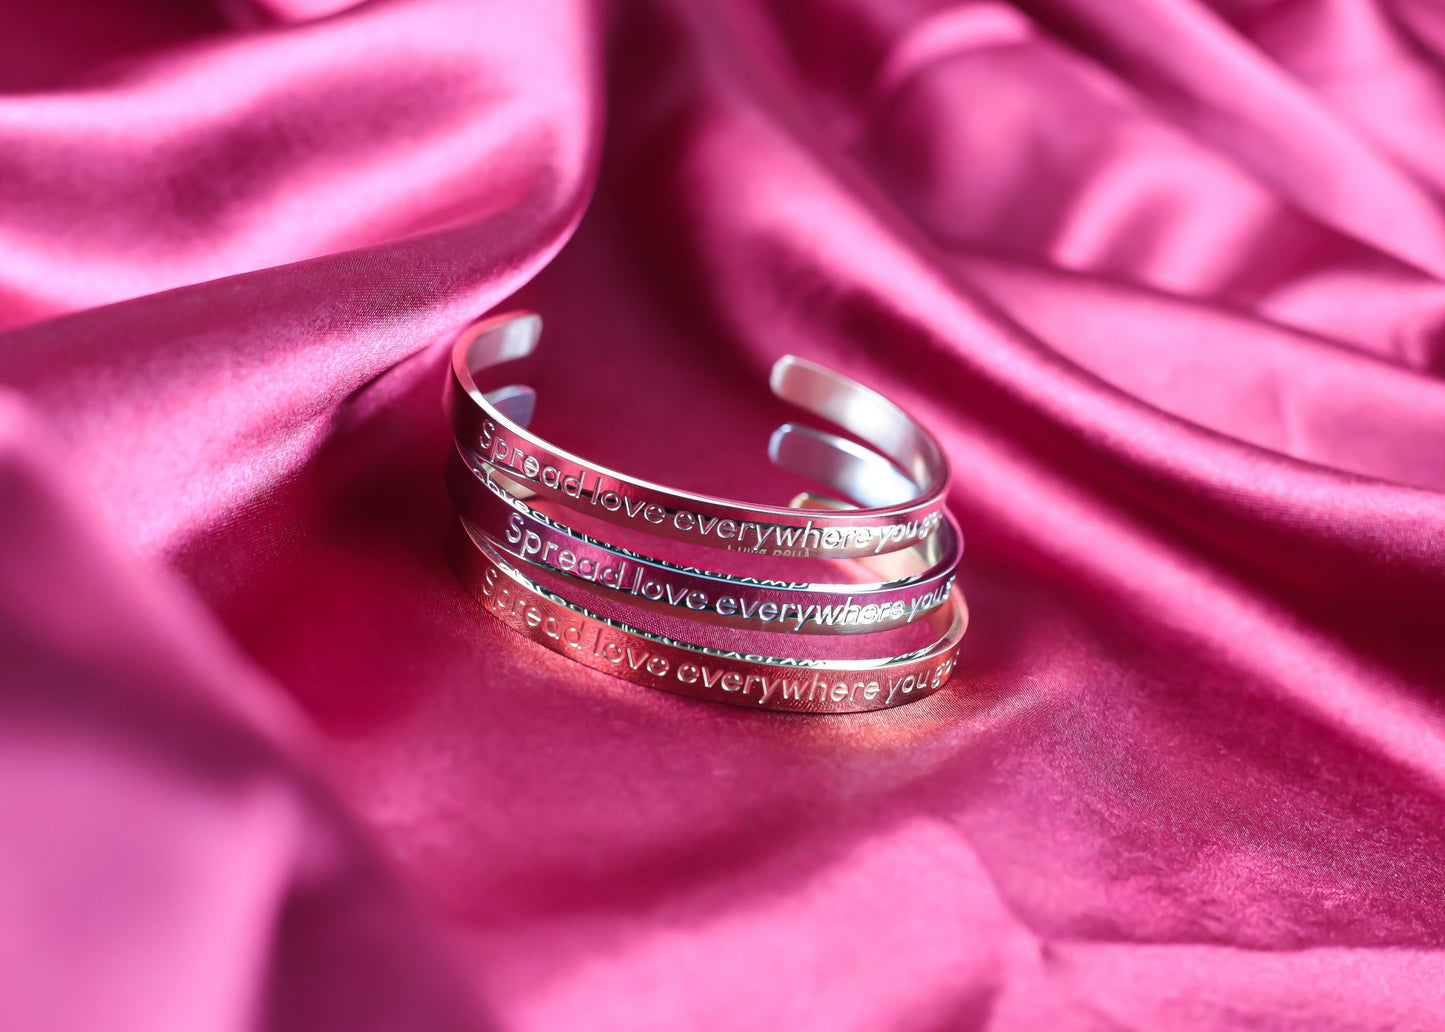 Espalhe amor onde quer que vá: pulseira de aço inoxidável com texto gravado